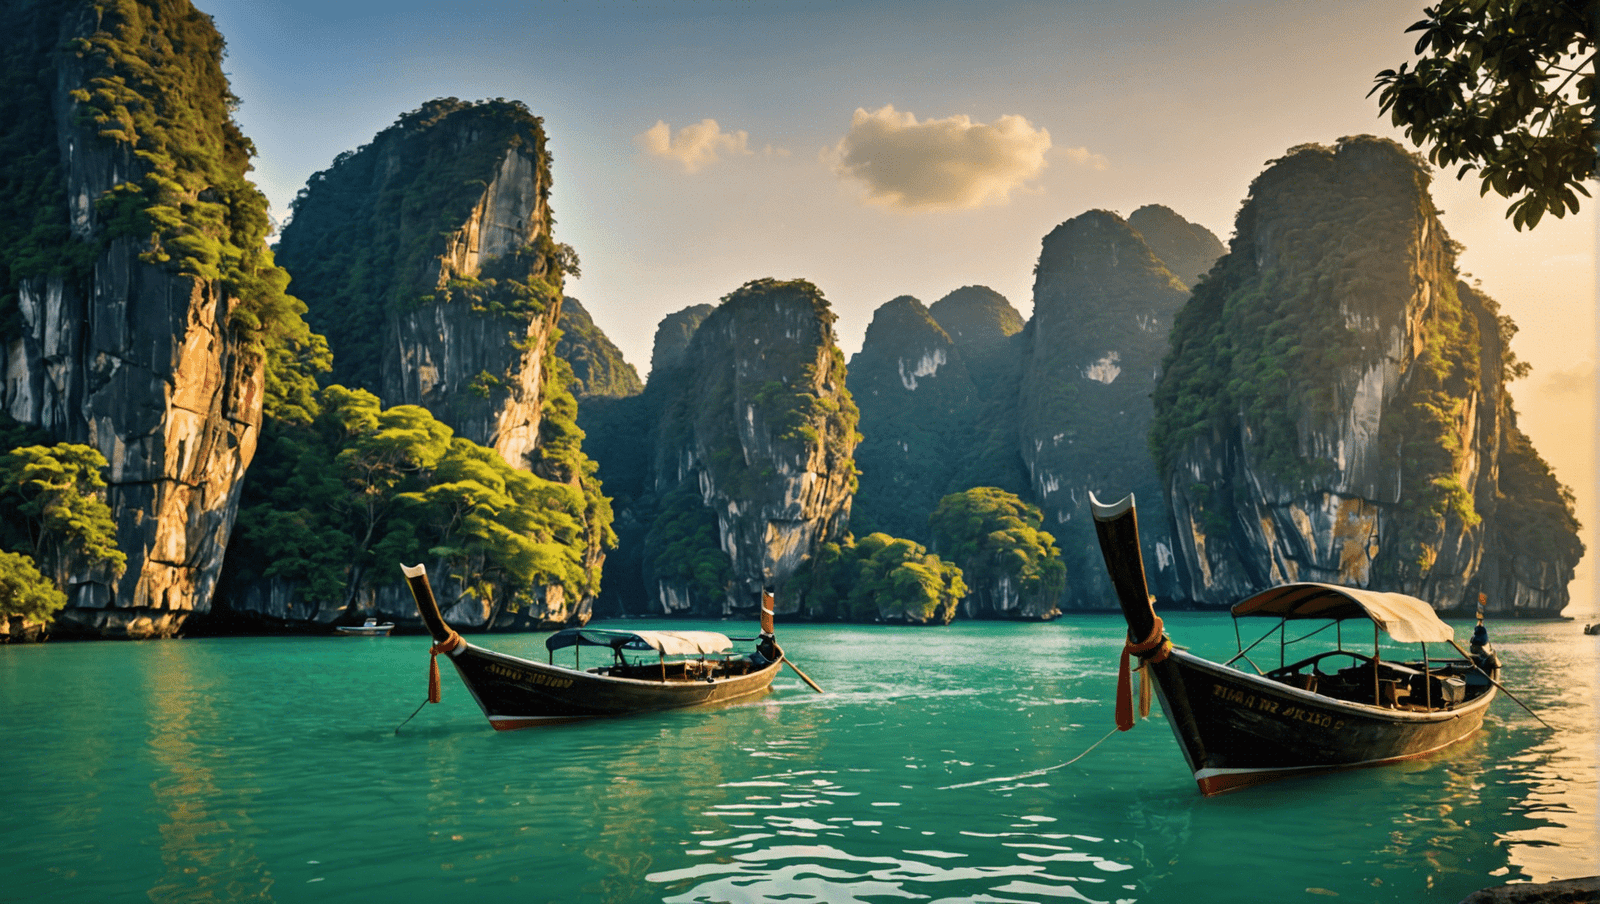 découvrez le guide ultime pour voyager en thaïlande : conseils, bons plans, lieux incontournables et astuces pour un voyage inoubliable dans ce magnifique pays d'asie du sud-est.